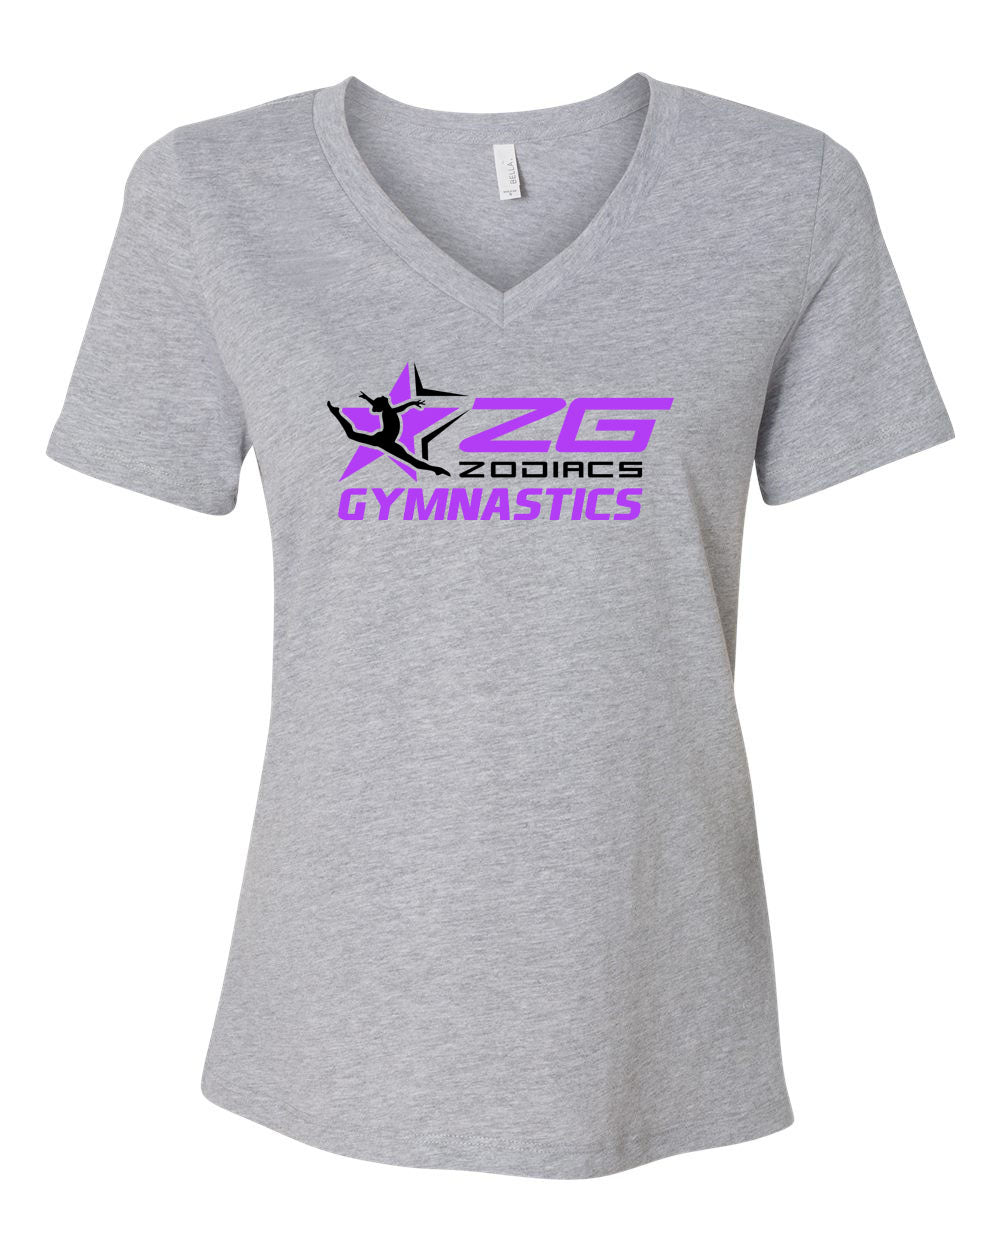 Zodiacs Gymnastics V-neck T-shirt